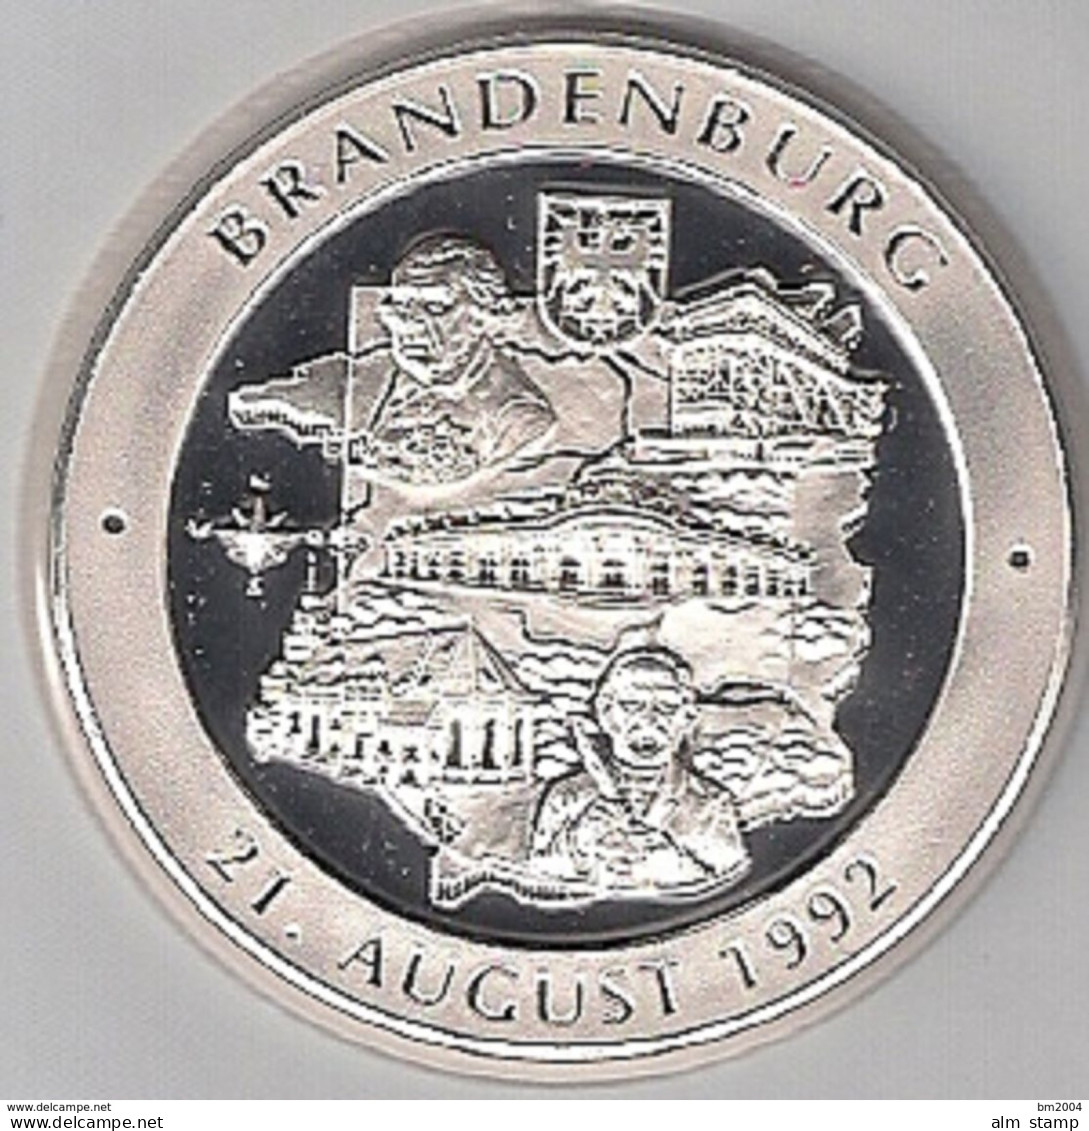 999/1000 Silber Medaille " Brandenburg  " PP   36 Mm DMR Rohgewicht : 14 G Prägung : Hochrelief - Monedas Elongadas (elongated Coins)